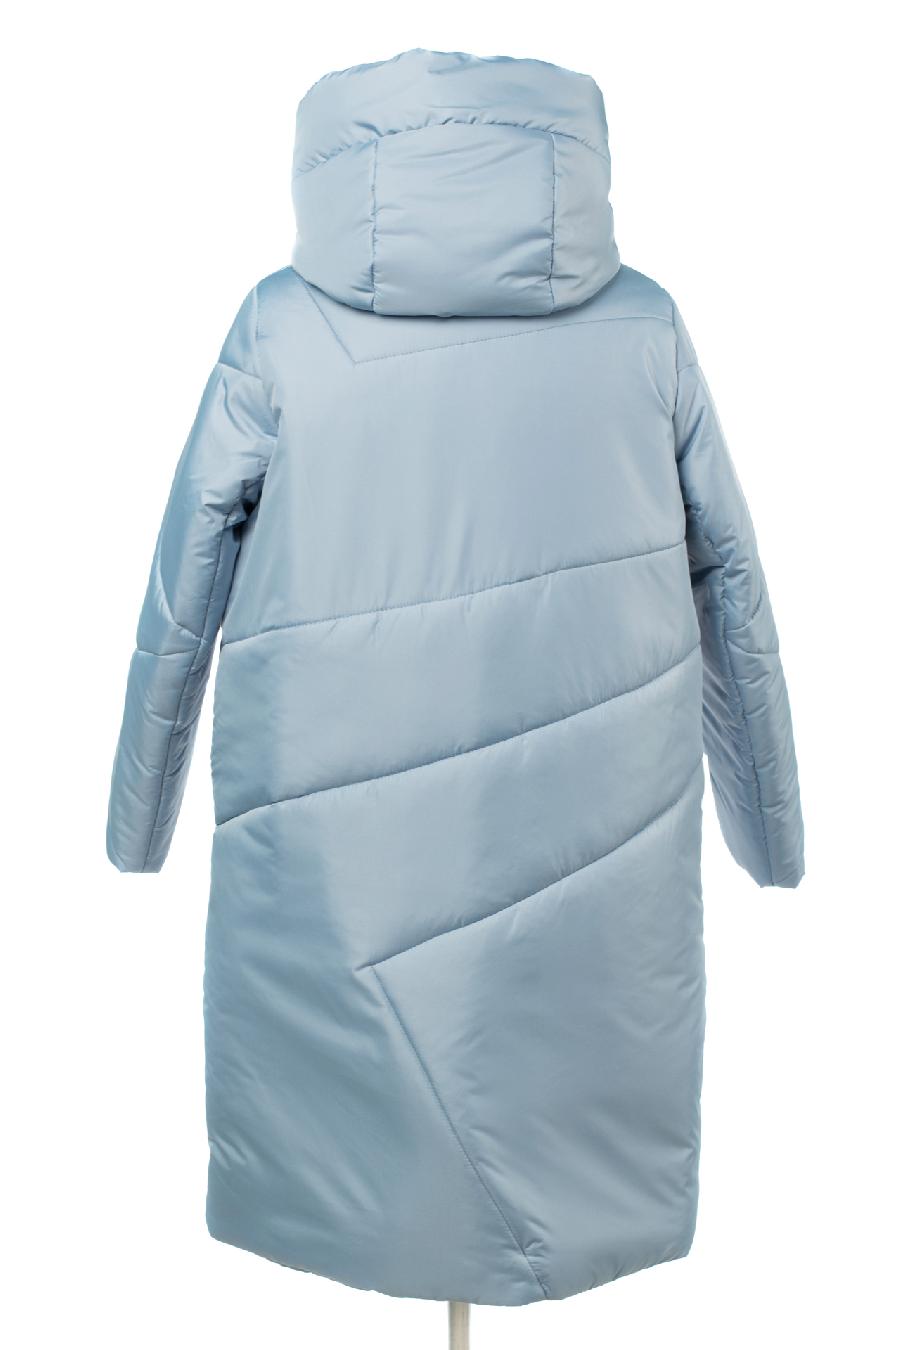 05-2065 Куртка женская зимняя (синтепон 300) Плащевка голубой